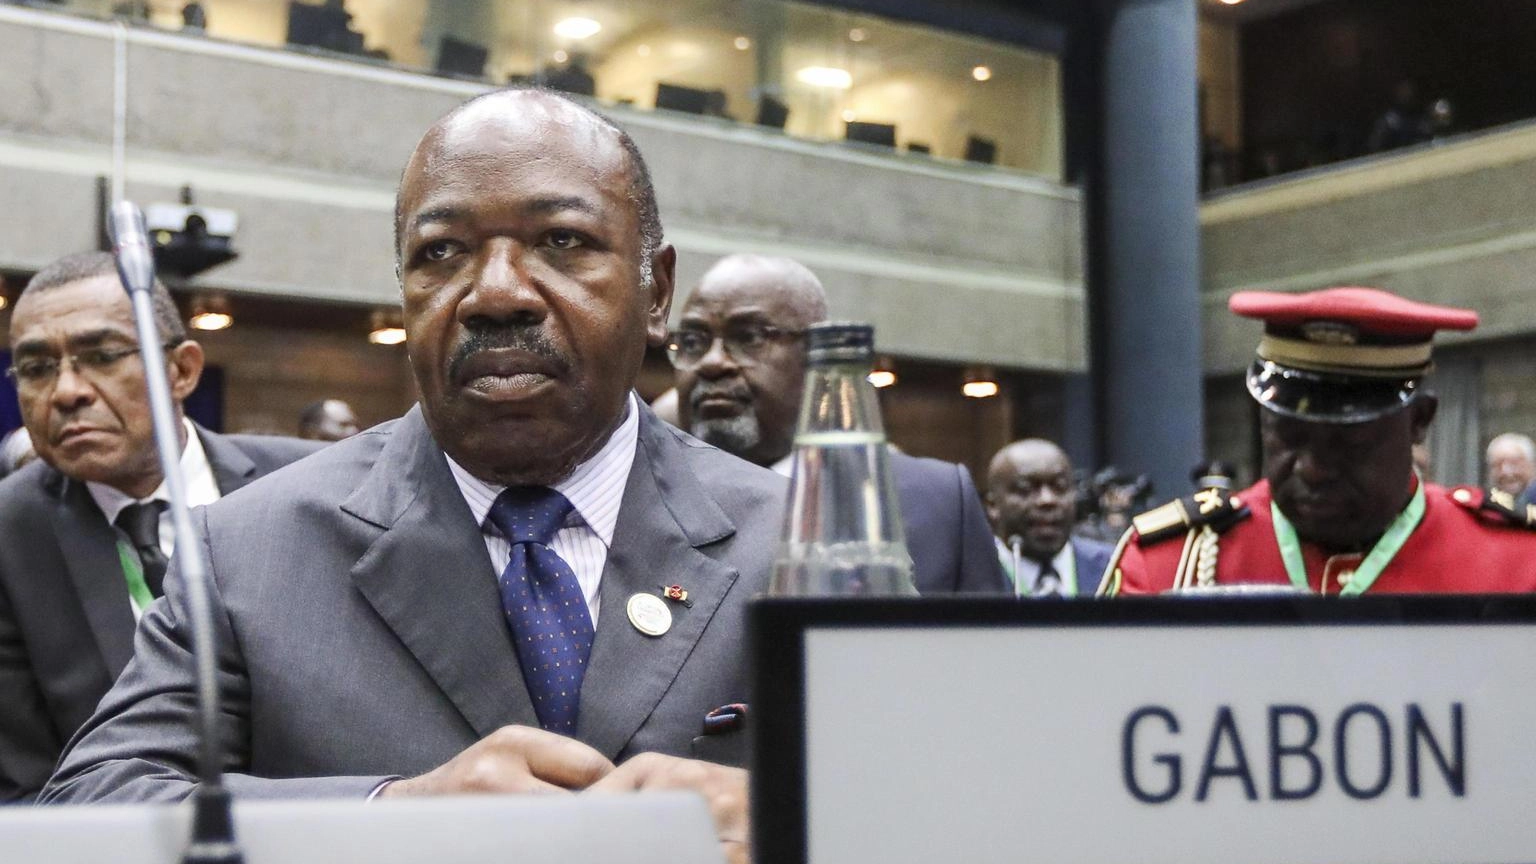 Gabon: il presidente Ali Bongo agli arresti domiciliari